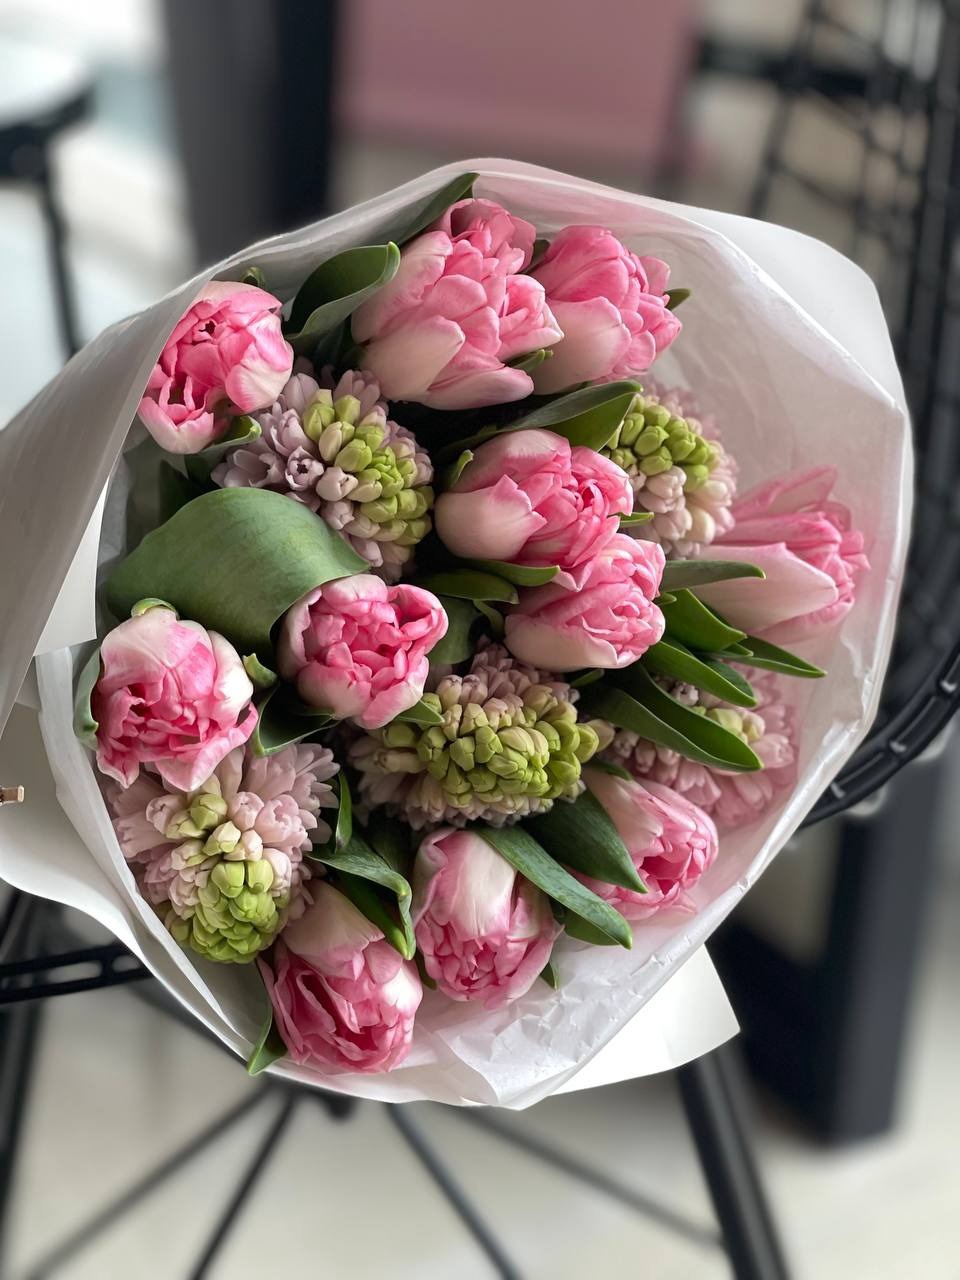 Дуобукет из тюльпанов и гиацинтов - 2 500 ₽, заказать онлайн.